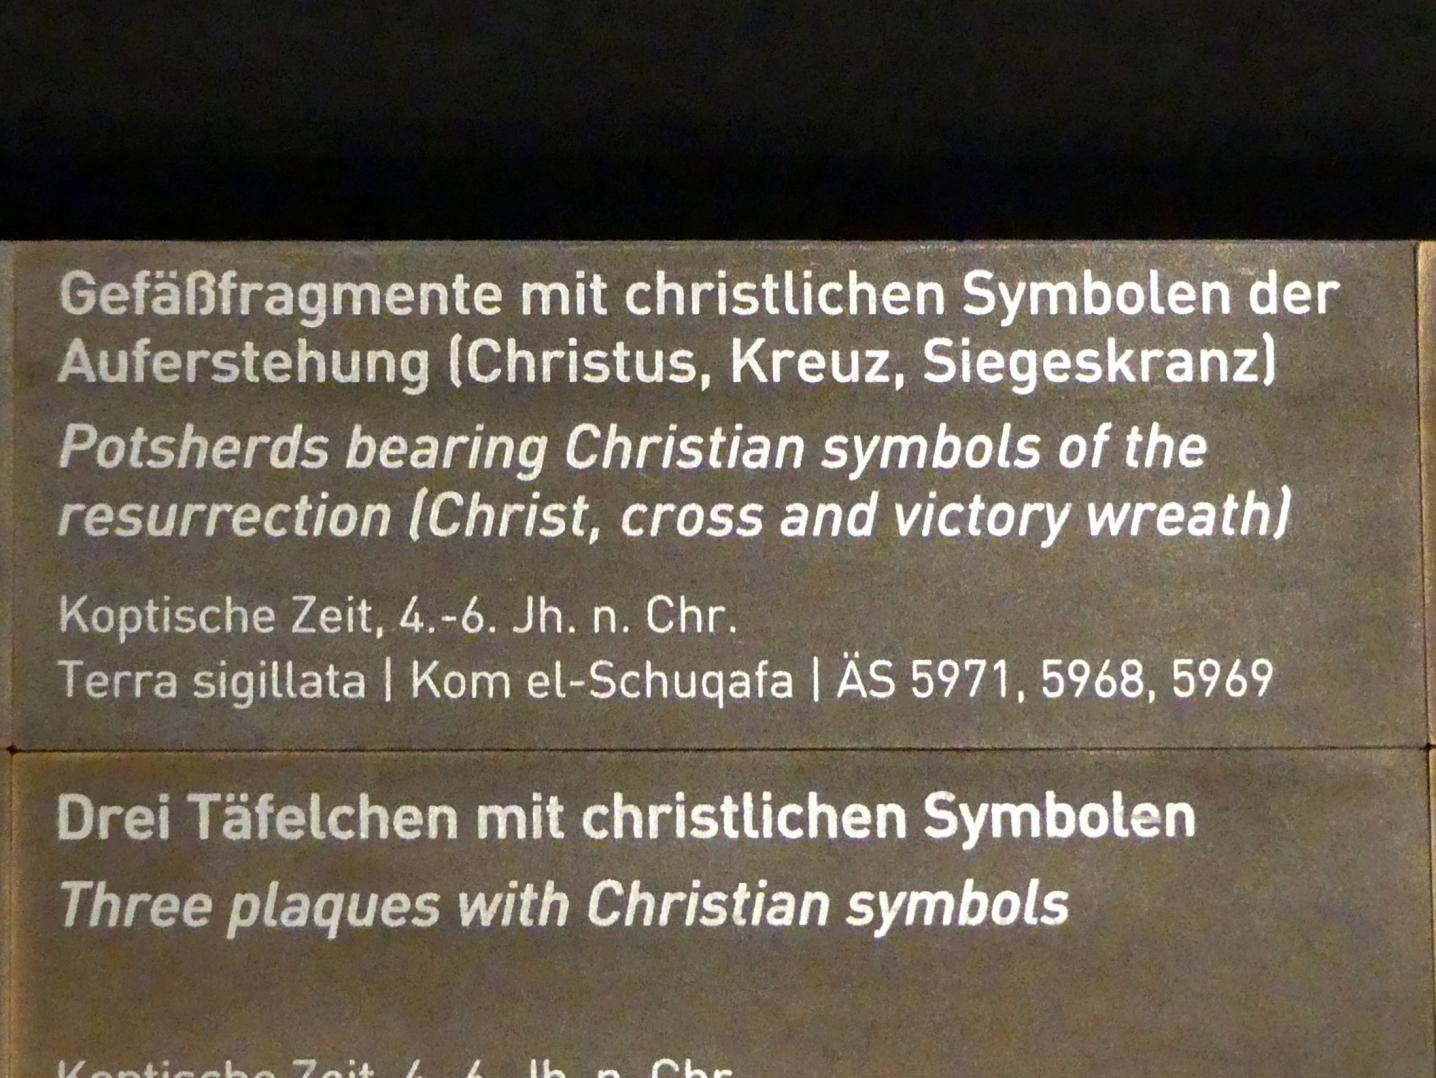 Gefäßfragmente mit christlichen Symbolen der Auferstehung (Christus, Kreuz, Siegeskranz), Koptische Zeit, 200 - 800, 300 - 600, Bild 3/3